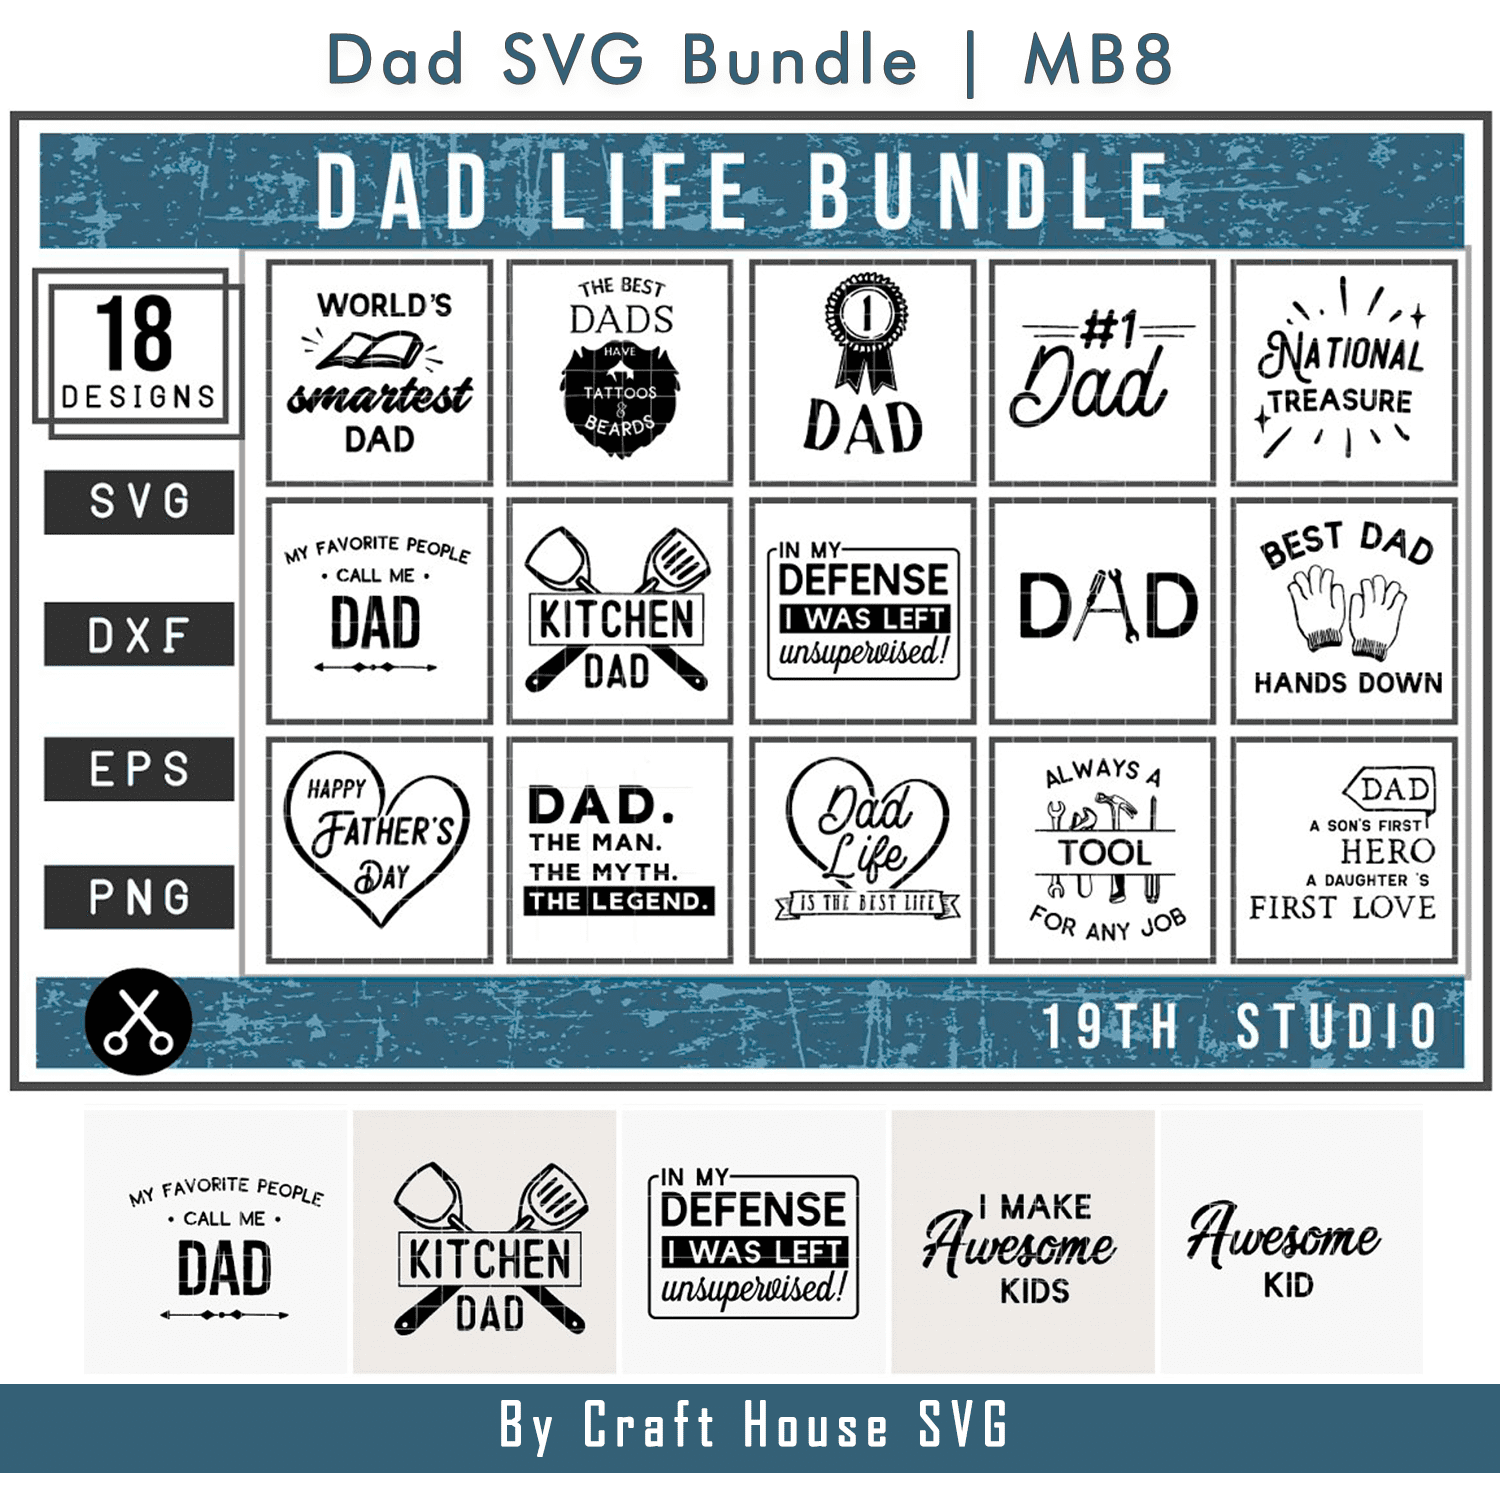 Dad SVG Bundle | MB8 cover.